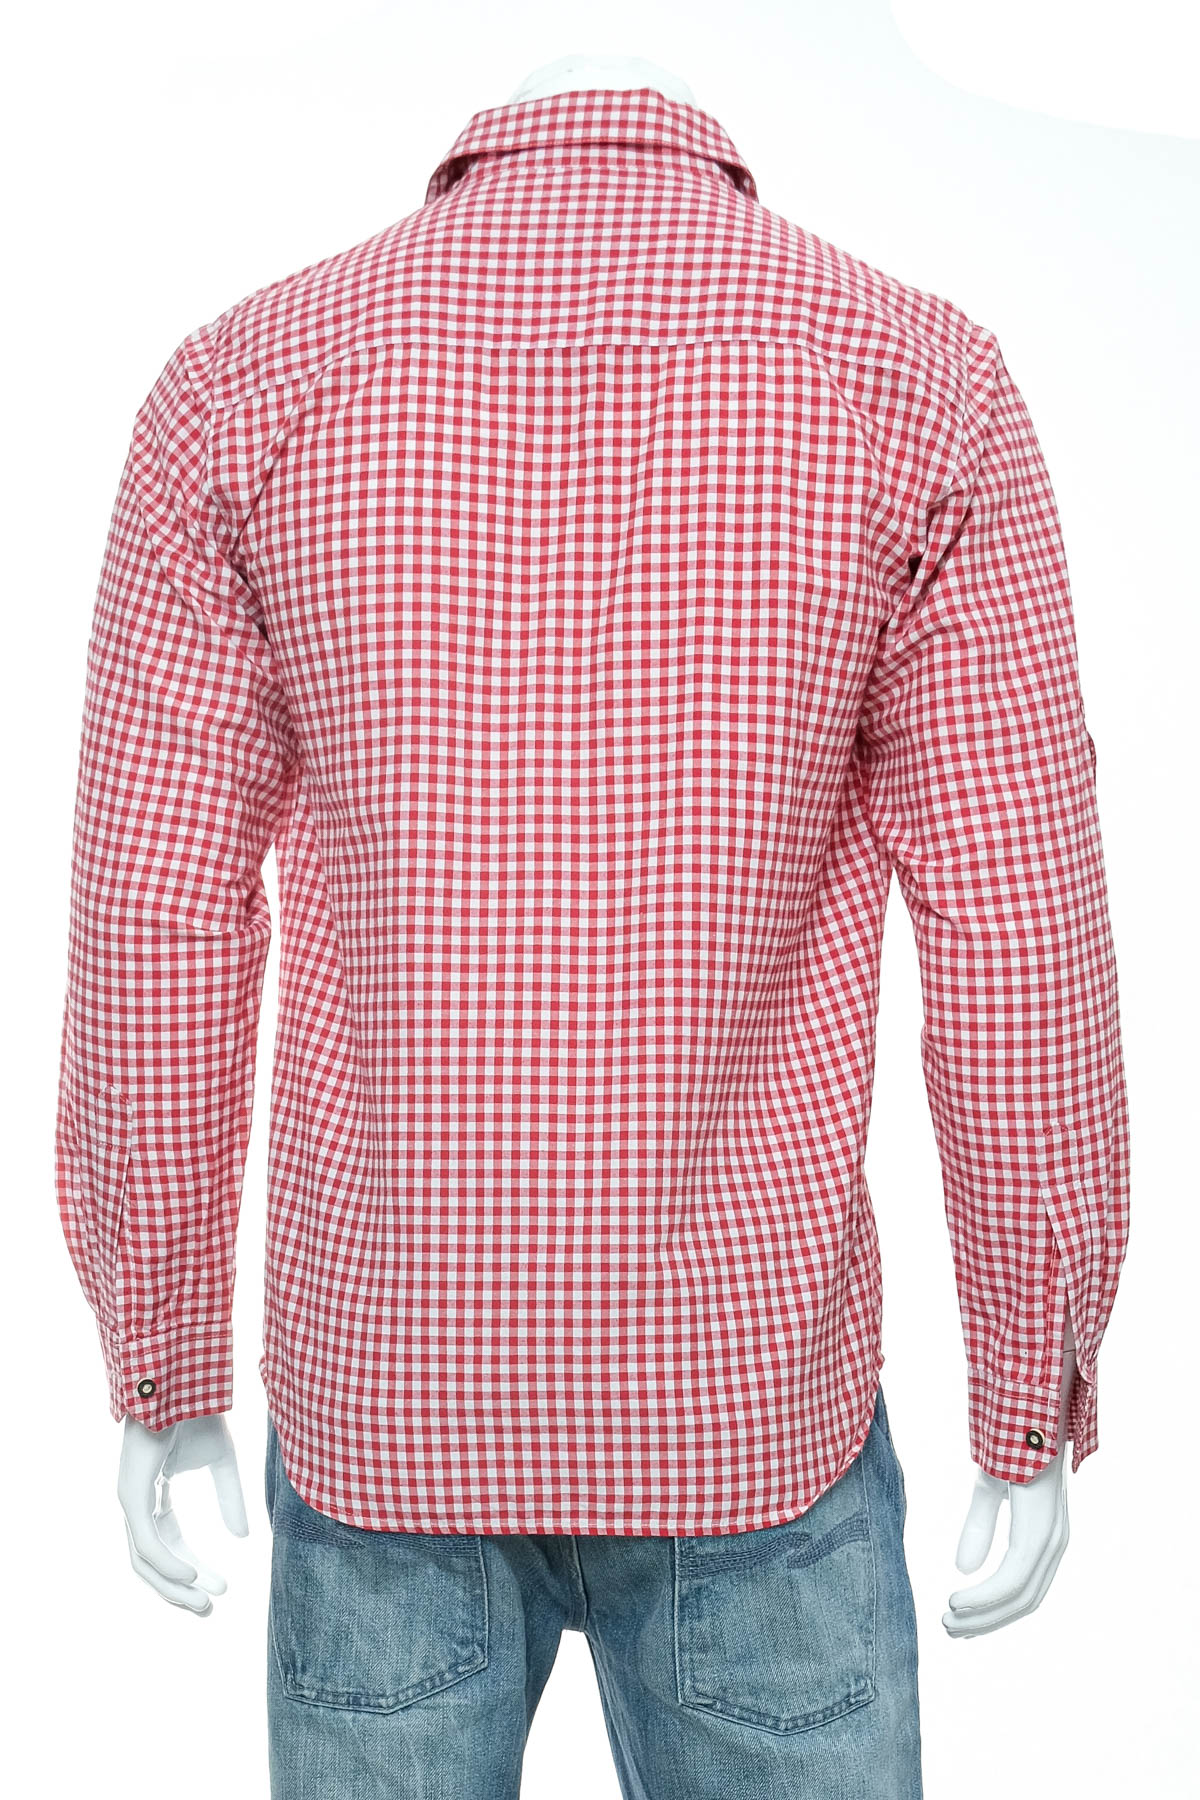 Ανδρικό πουκάμισο - Alphorn - 1